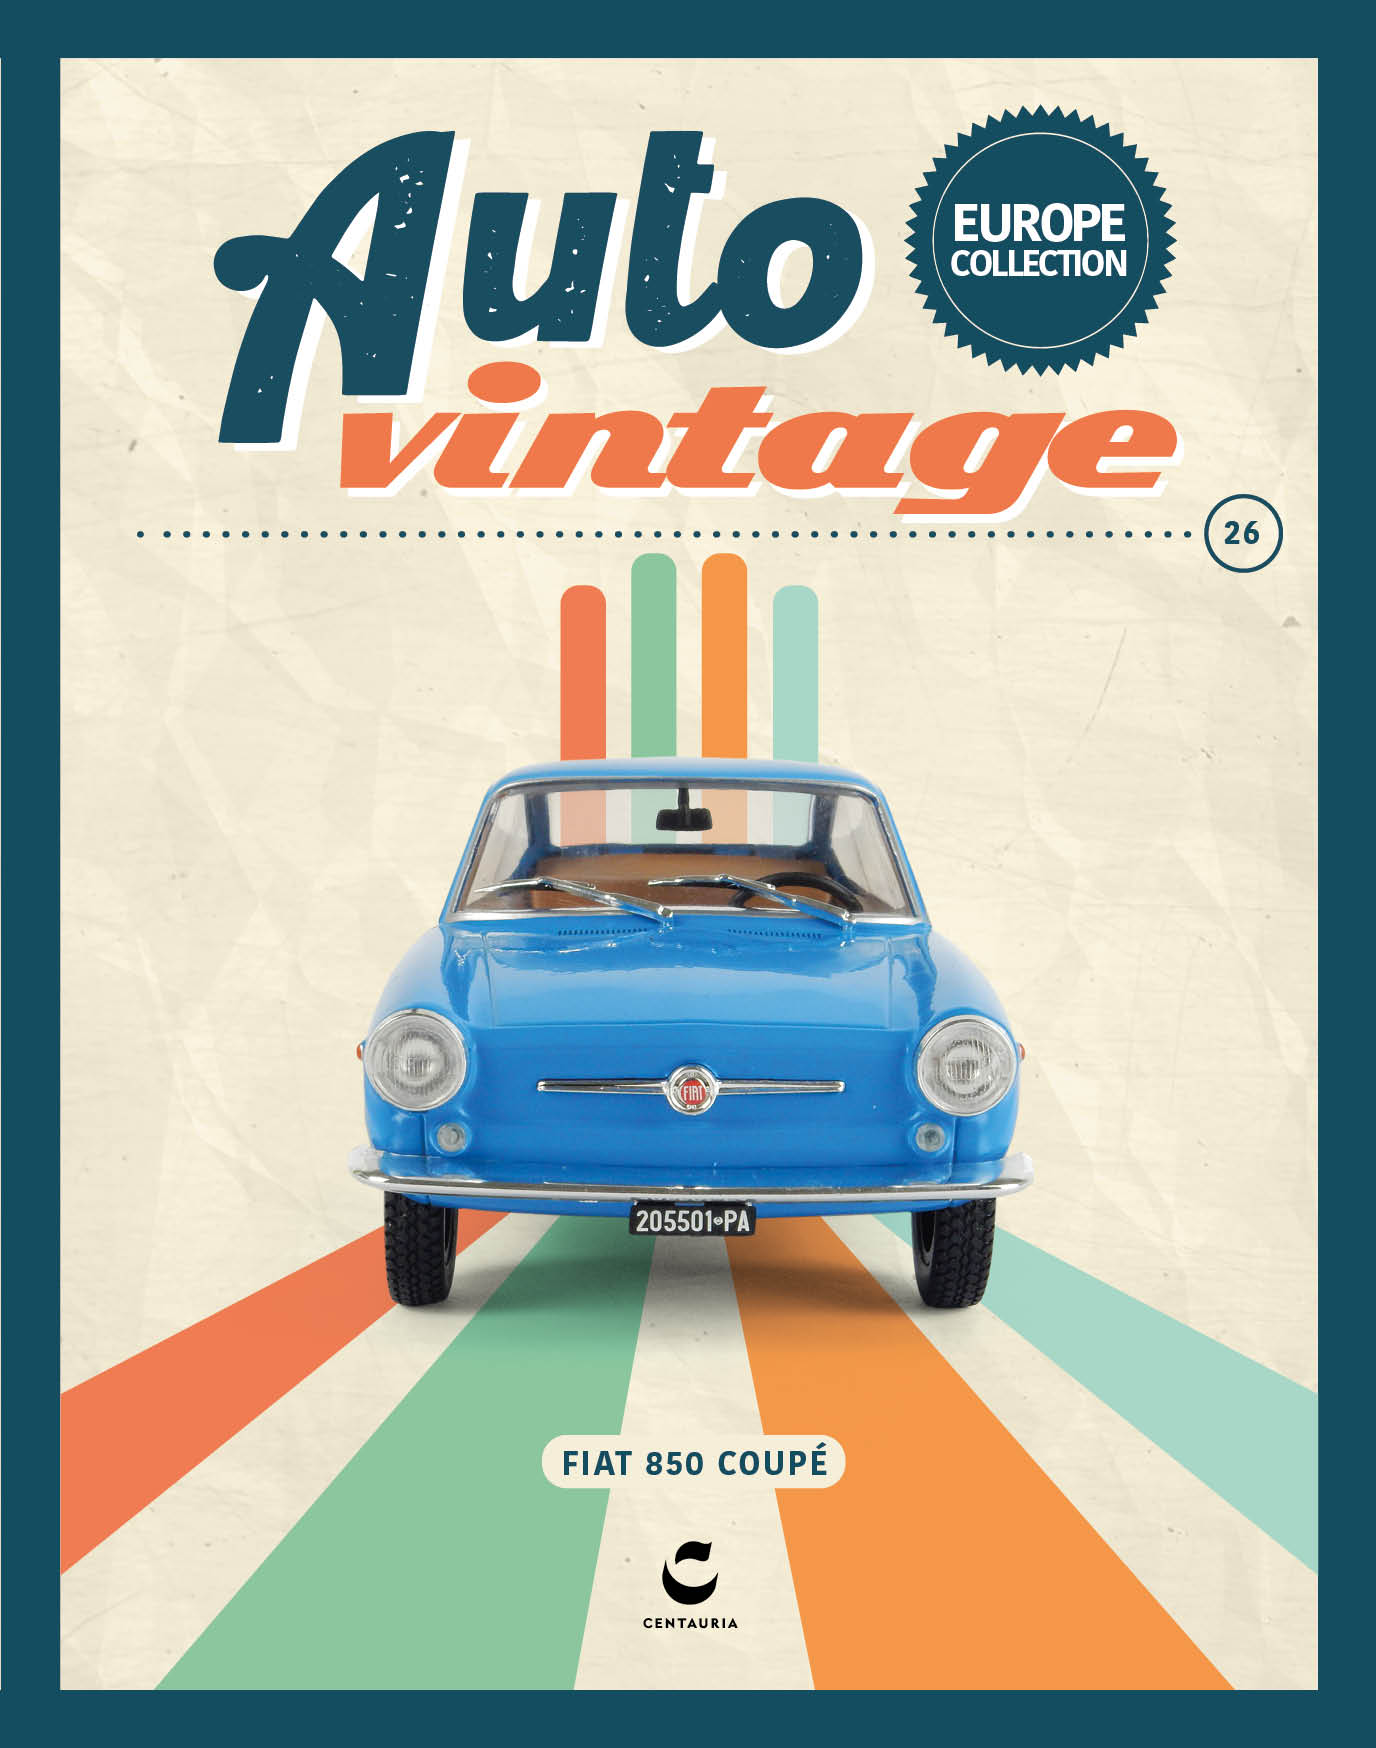 Auto Vintage Europa 2023